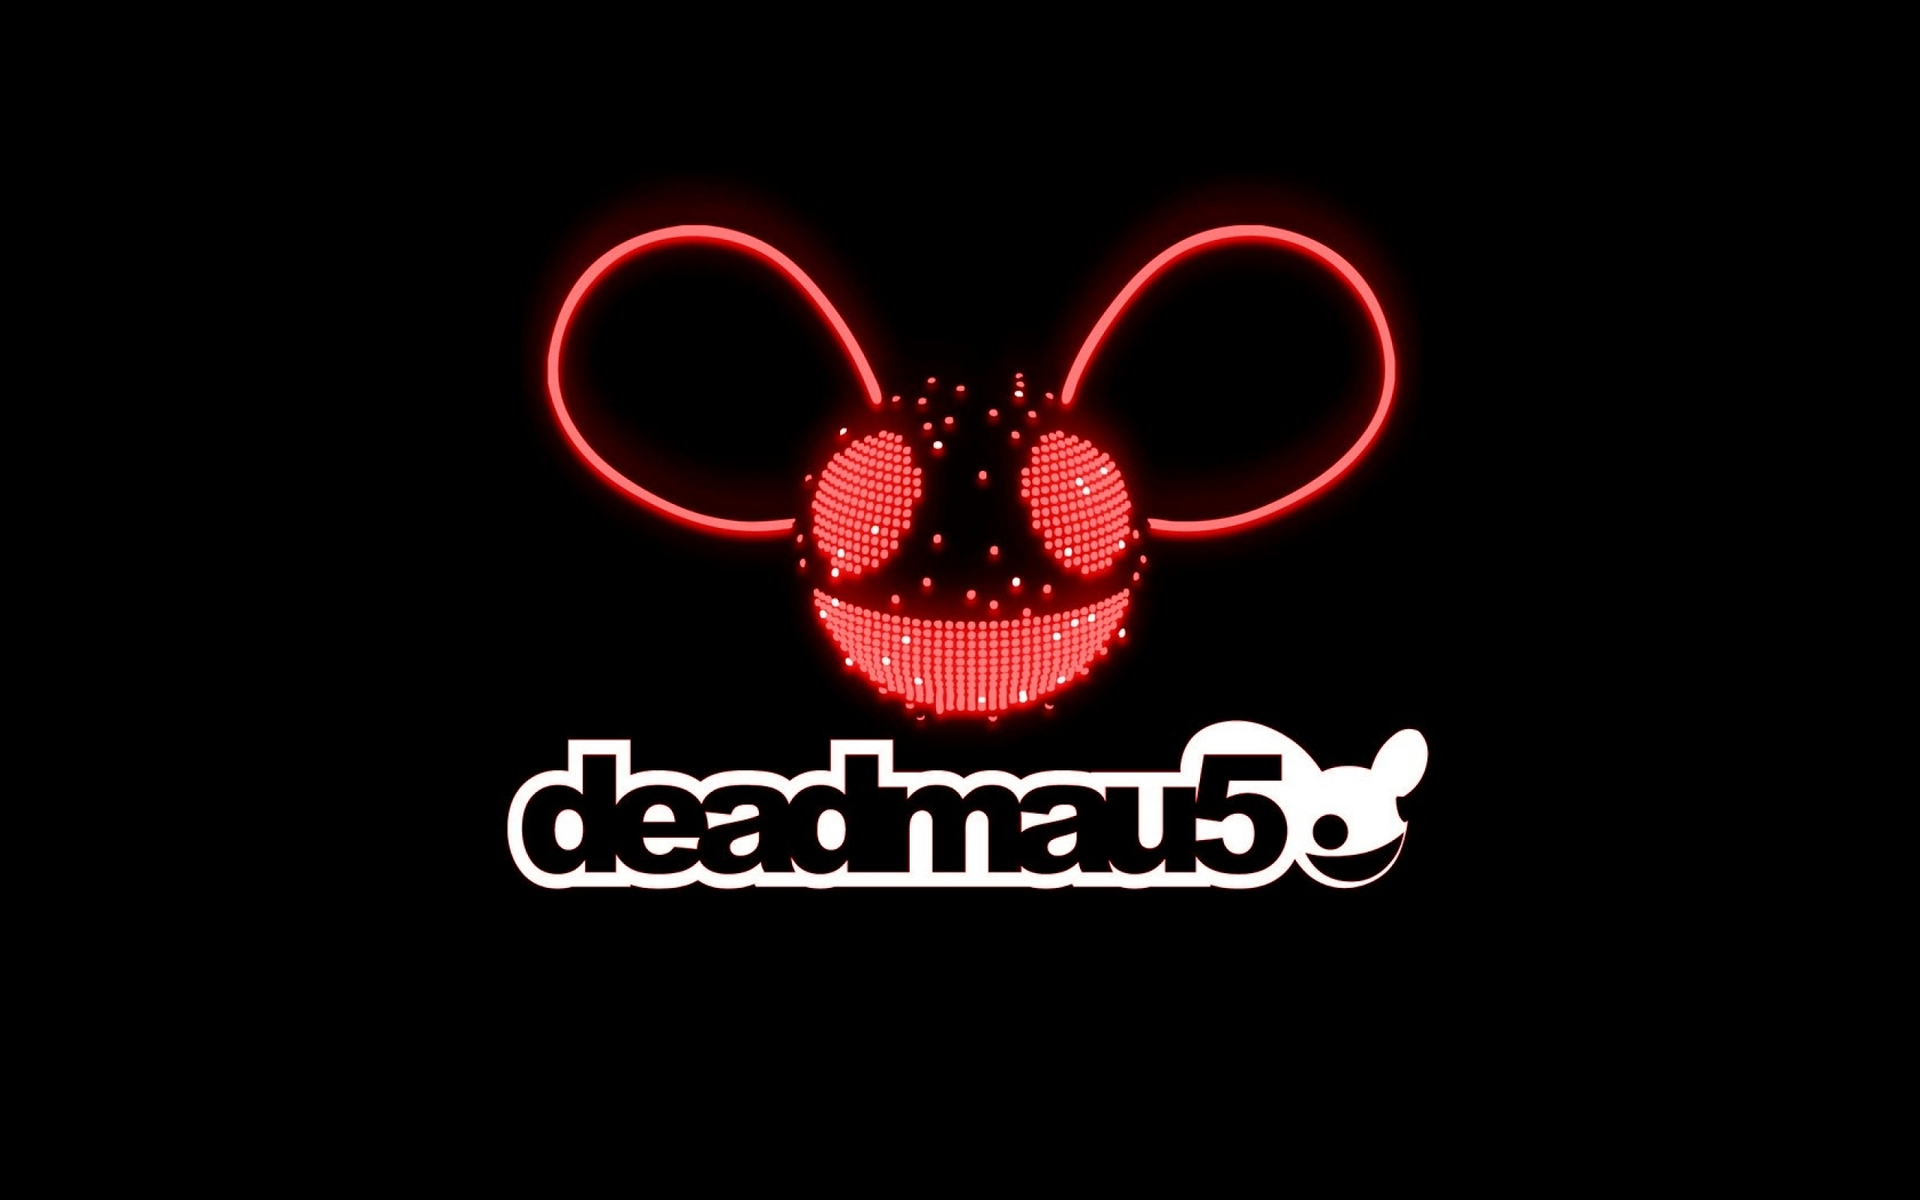 Téléchargez gratuitement l'image Musique, Deadmau5 sur le bureau de votre PC